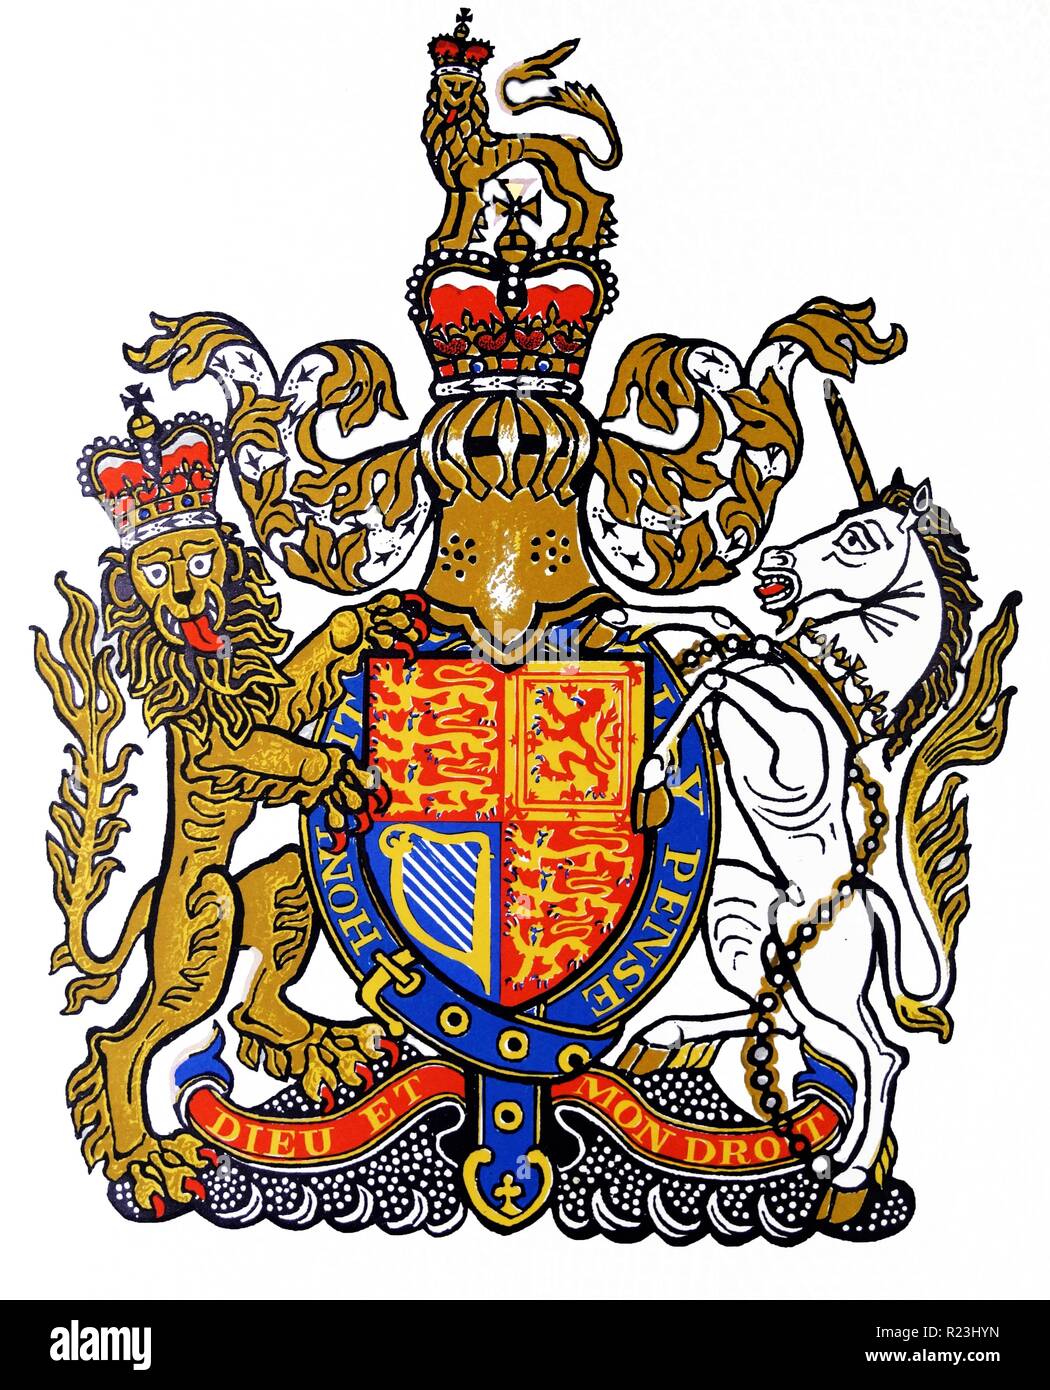 Das Wappen der britischen Monarchen, die das Motto der englischen Monarchen, Dieu et Mon droit (Gott und mein Recht). Gezeichnet von Edward Bawden CBE RA (1903-1989) war ein englischer Grafiker. Stockfoto